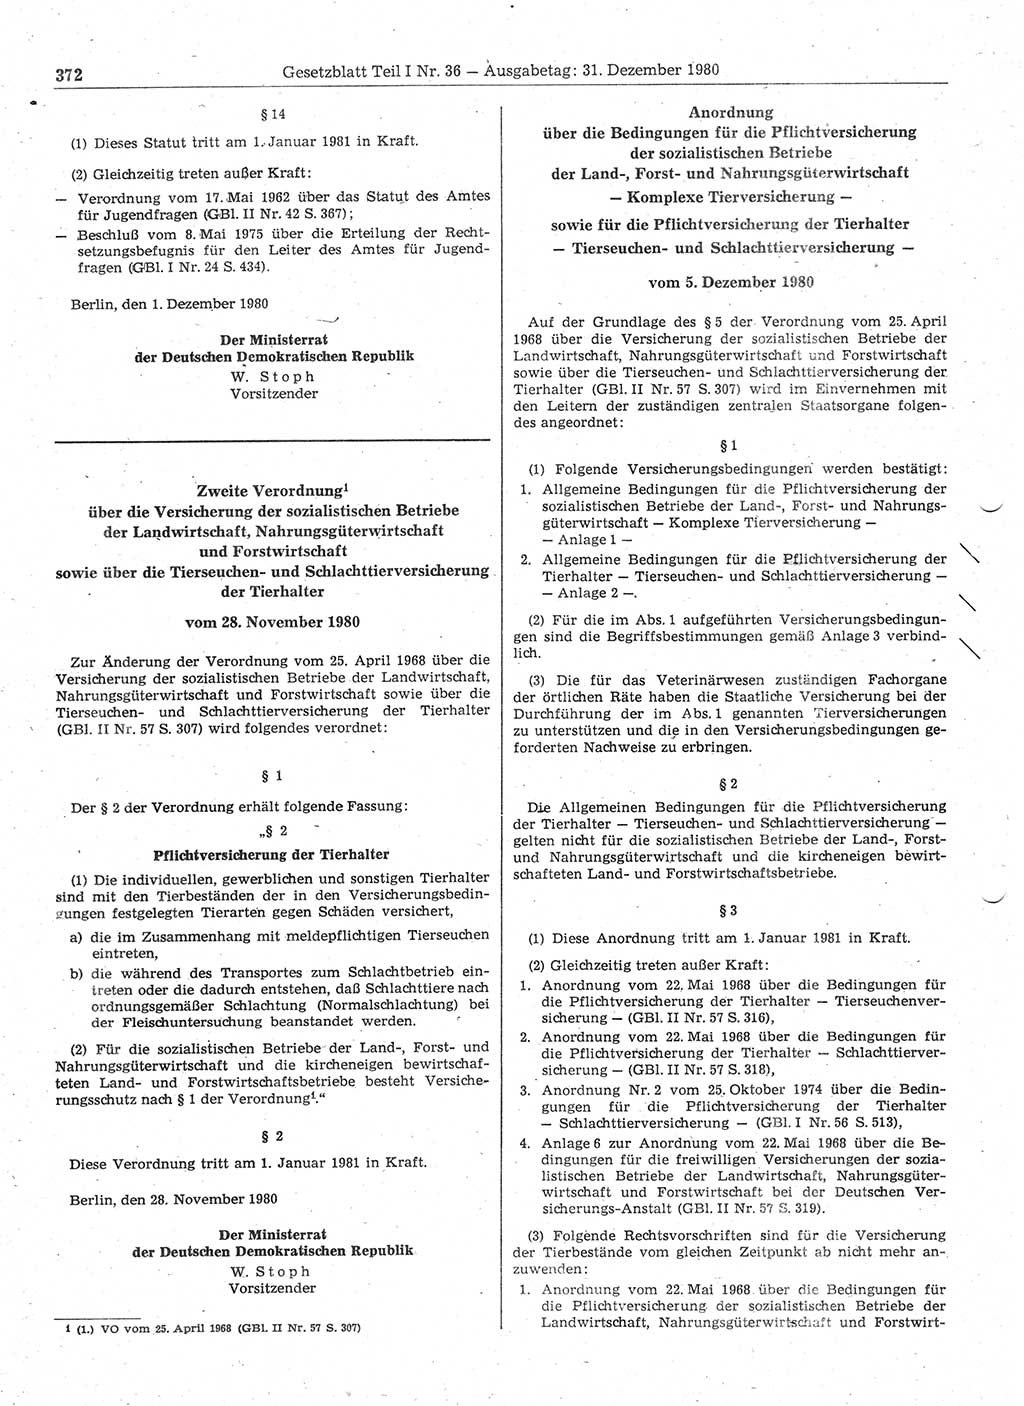 Gesetzblatt (GBl.) der Deutschen Demokratischen Republik (DDR) Teil Ⅰ 1980, Seite 372 (GBl. DDR Ⅰ 1980, S. 372)